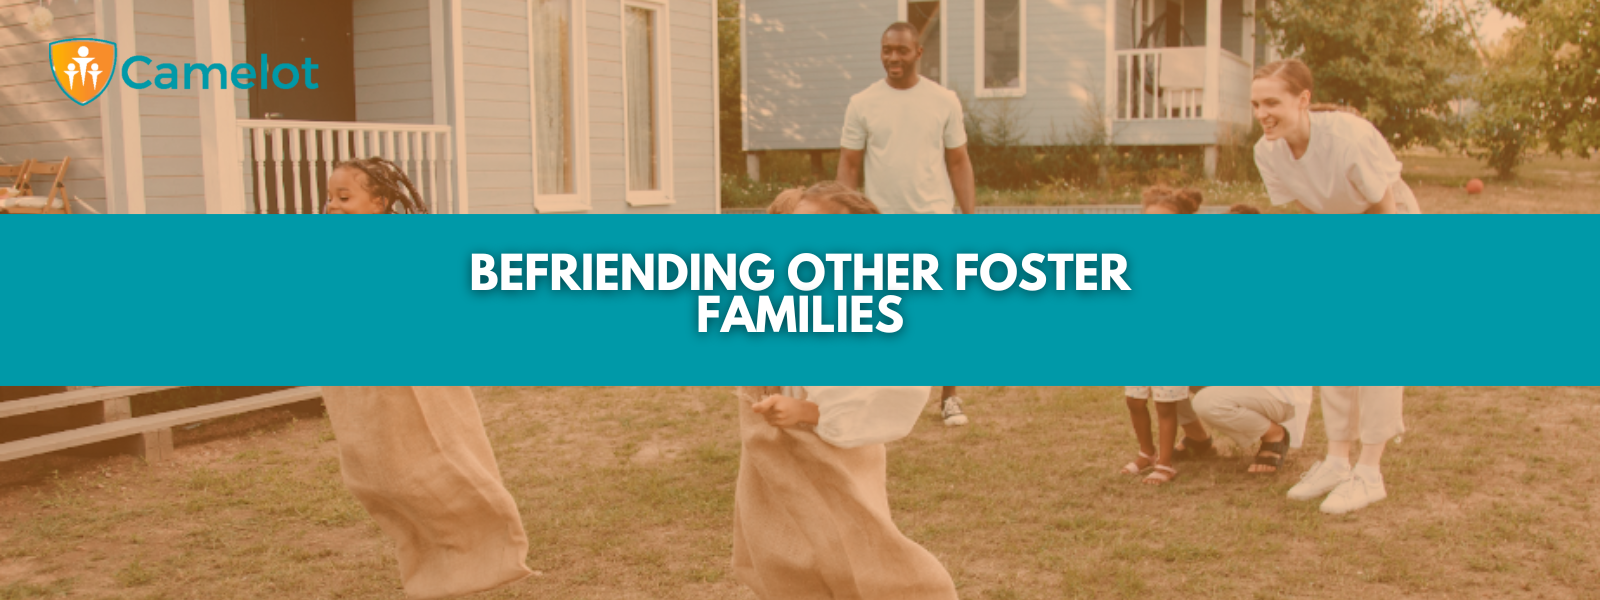 Befriending Foster Families